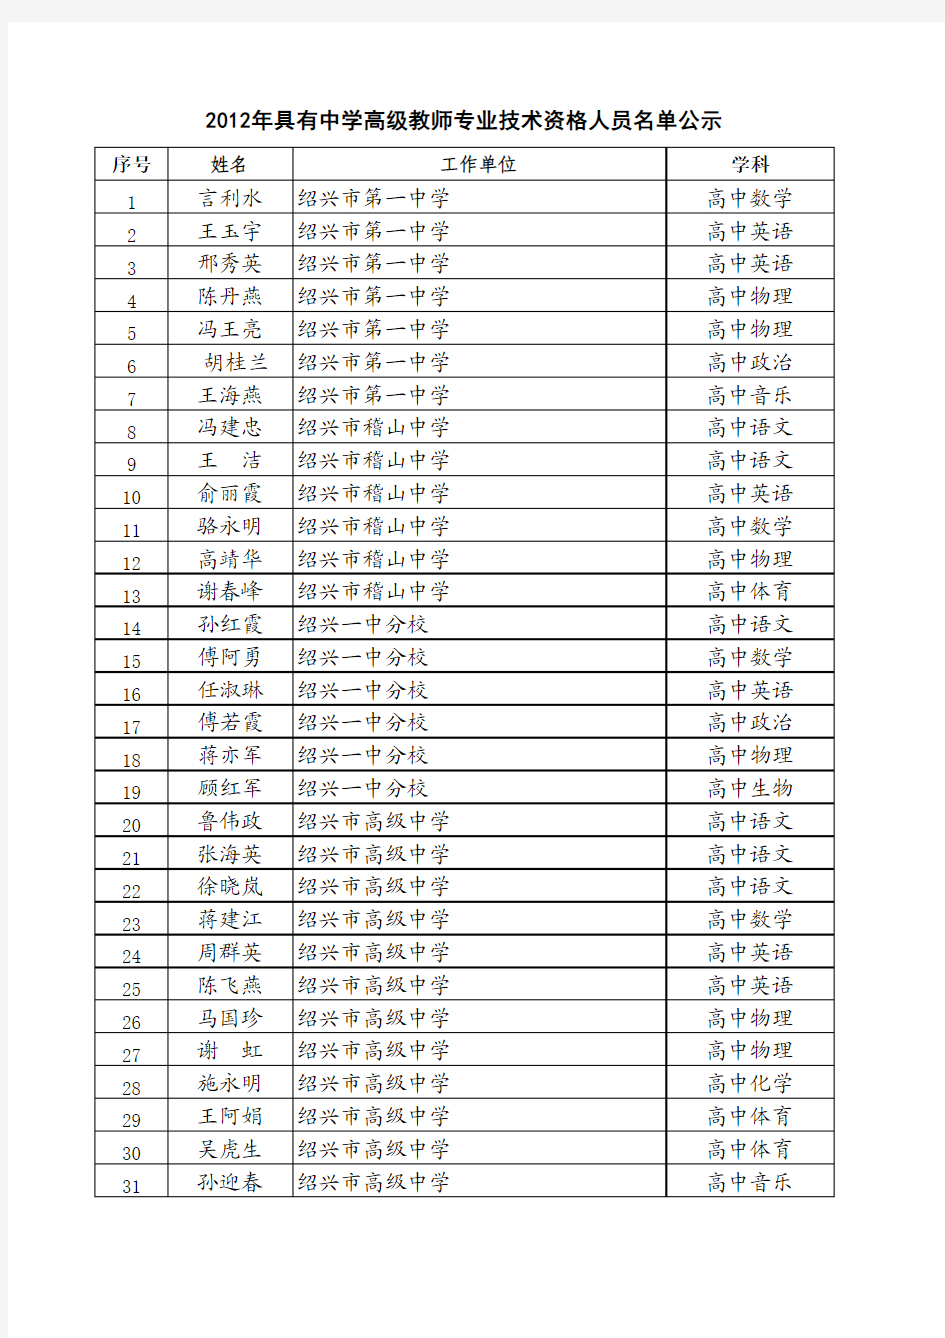 2012年具有中学高级教师专业技术资格人员名单公示